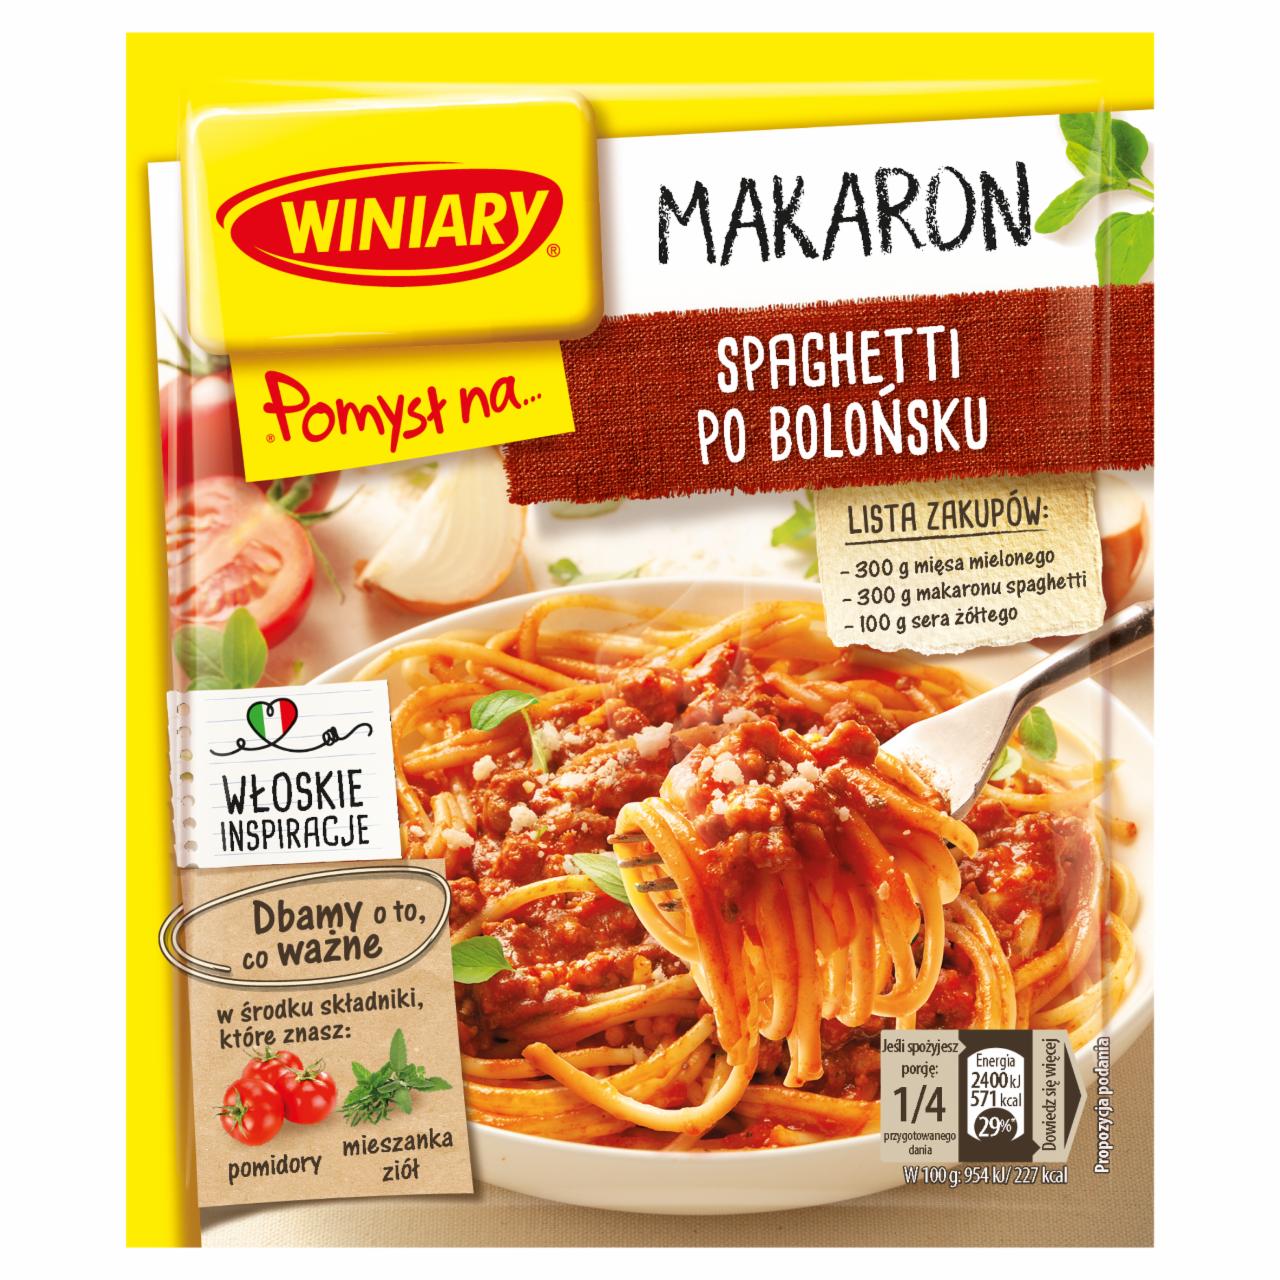 Zdjęcia - Winiary Pomysł na... Spaghetti po bolońsku 44 g